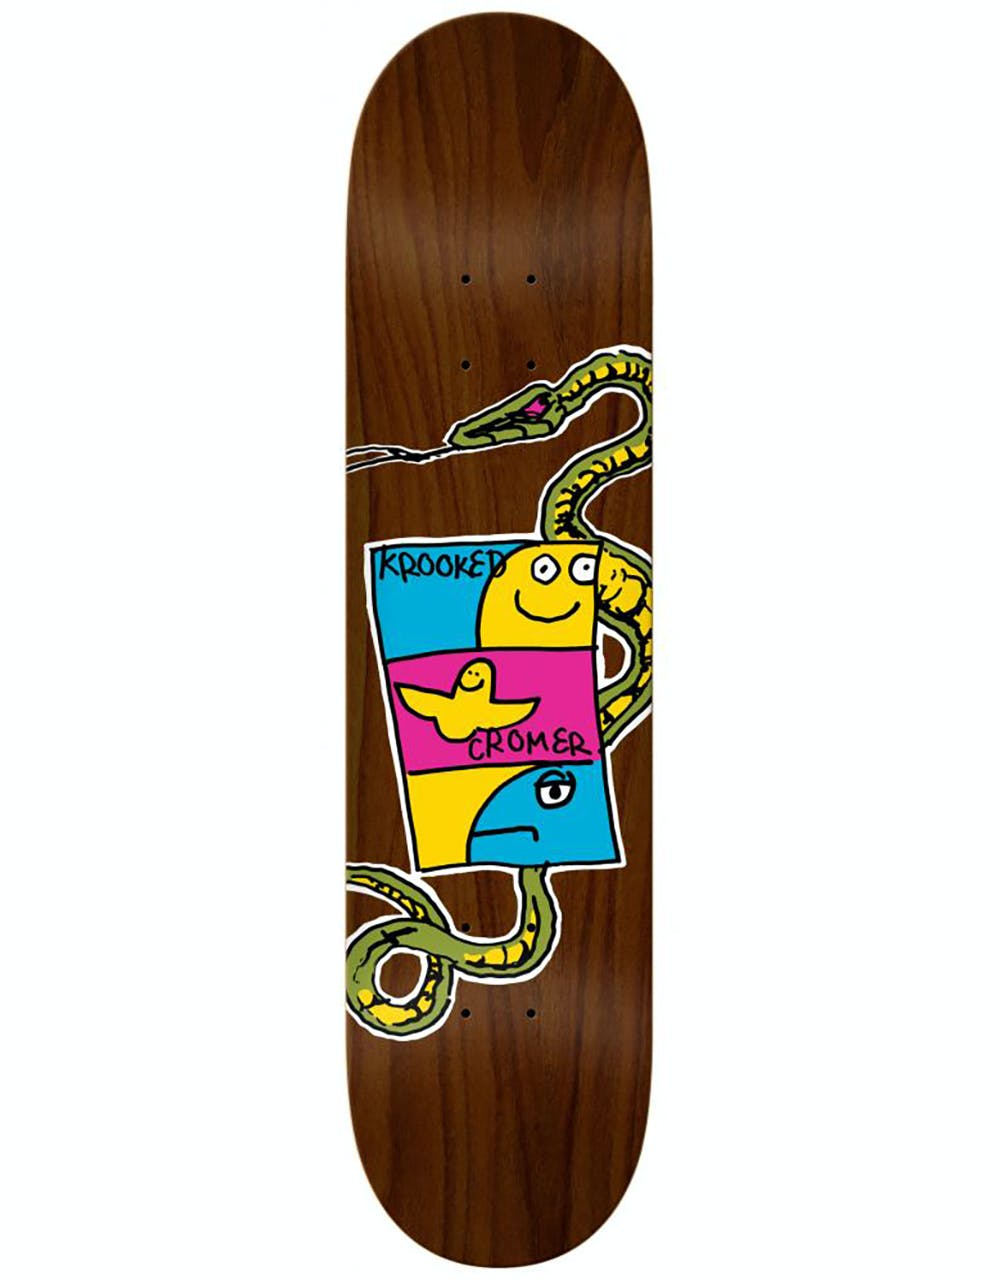 Krooked Cromer Viper Skateboard Deck - 8.06"